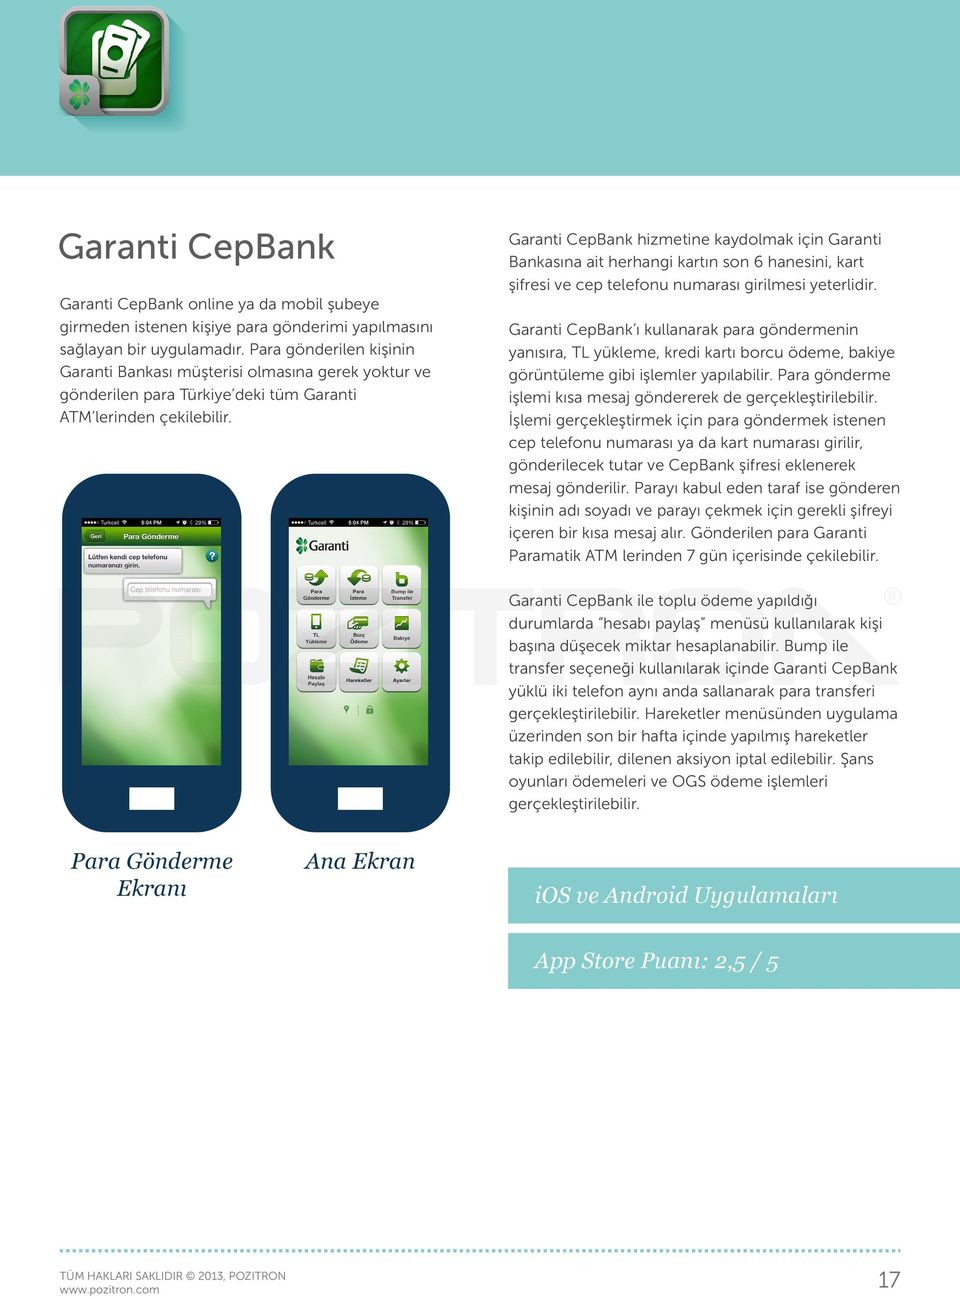 Garanti CepBank hizmetine kaydolmak için Garanti Bankasına ait herhangi kartın son 6 hanesini, kart şifresi ve cep telefonu numarası girilmesi yeterlidir.